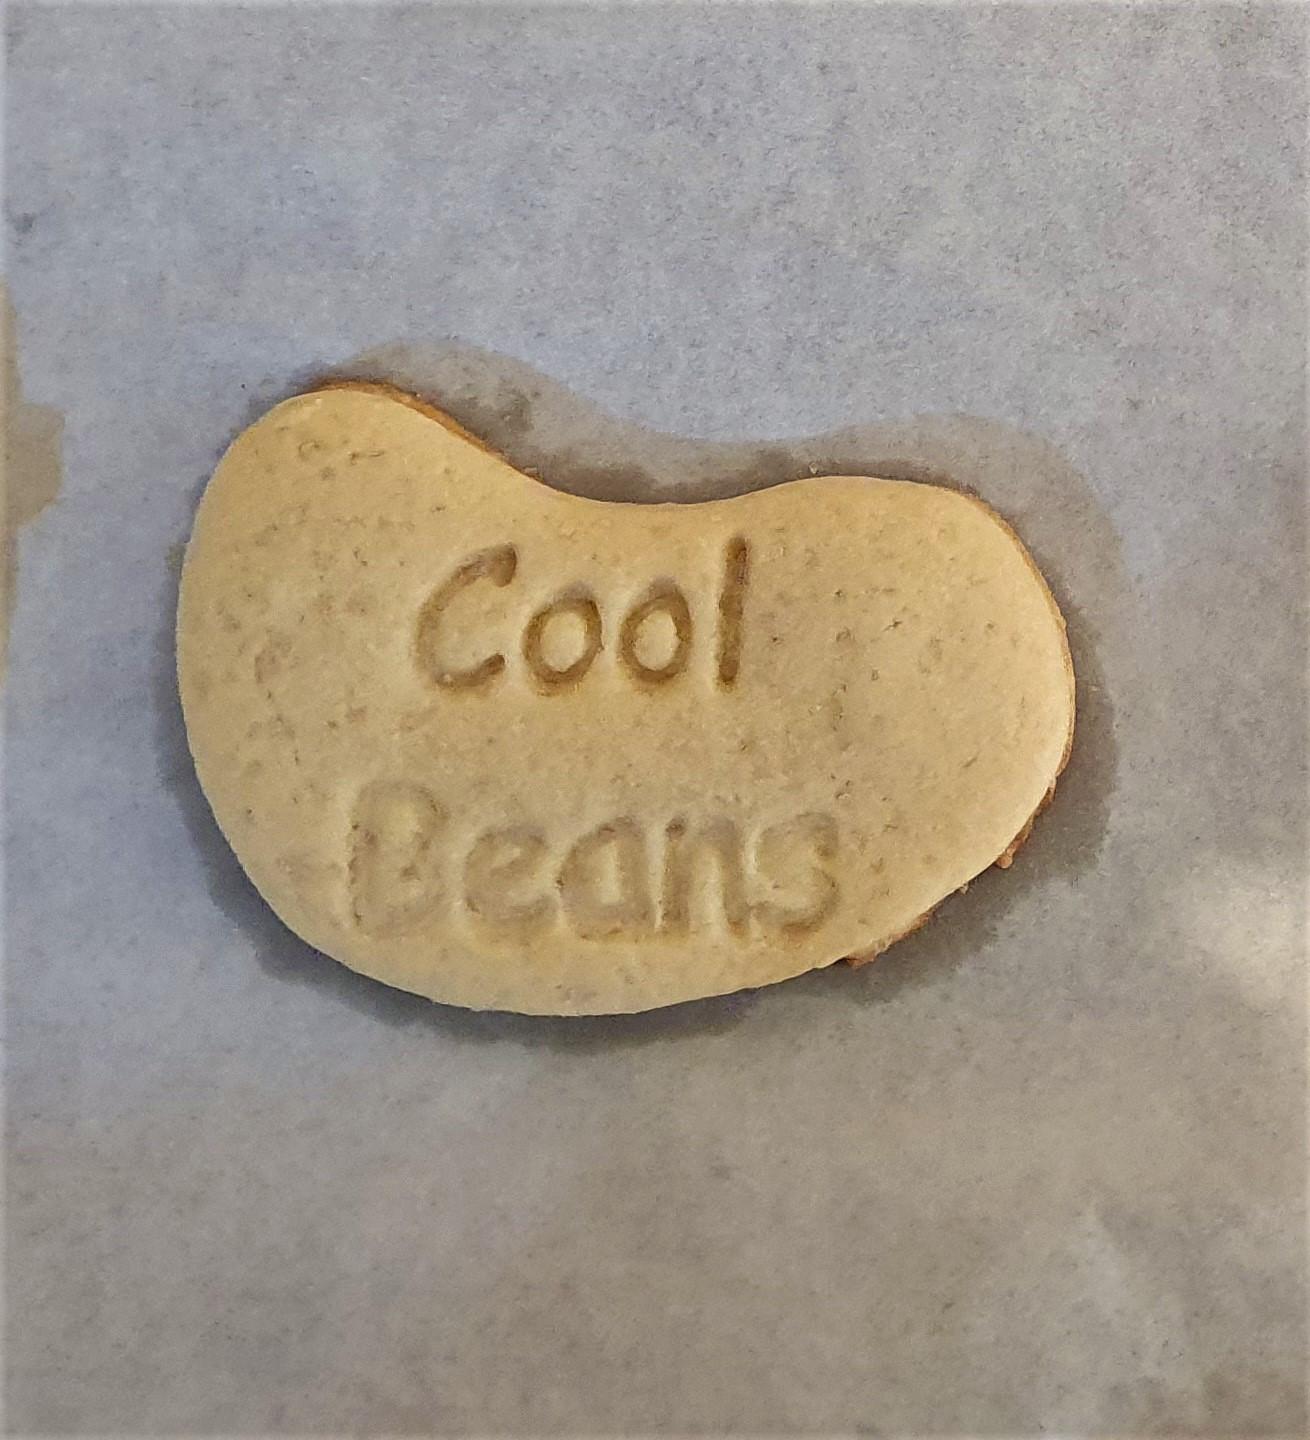 Cool Beans Cookie Cutter 3d model